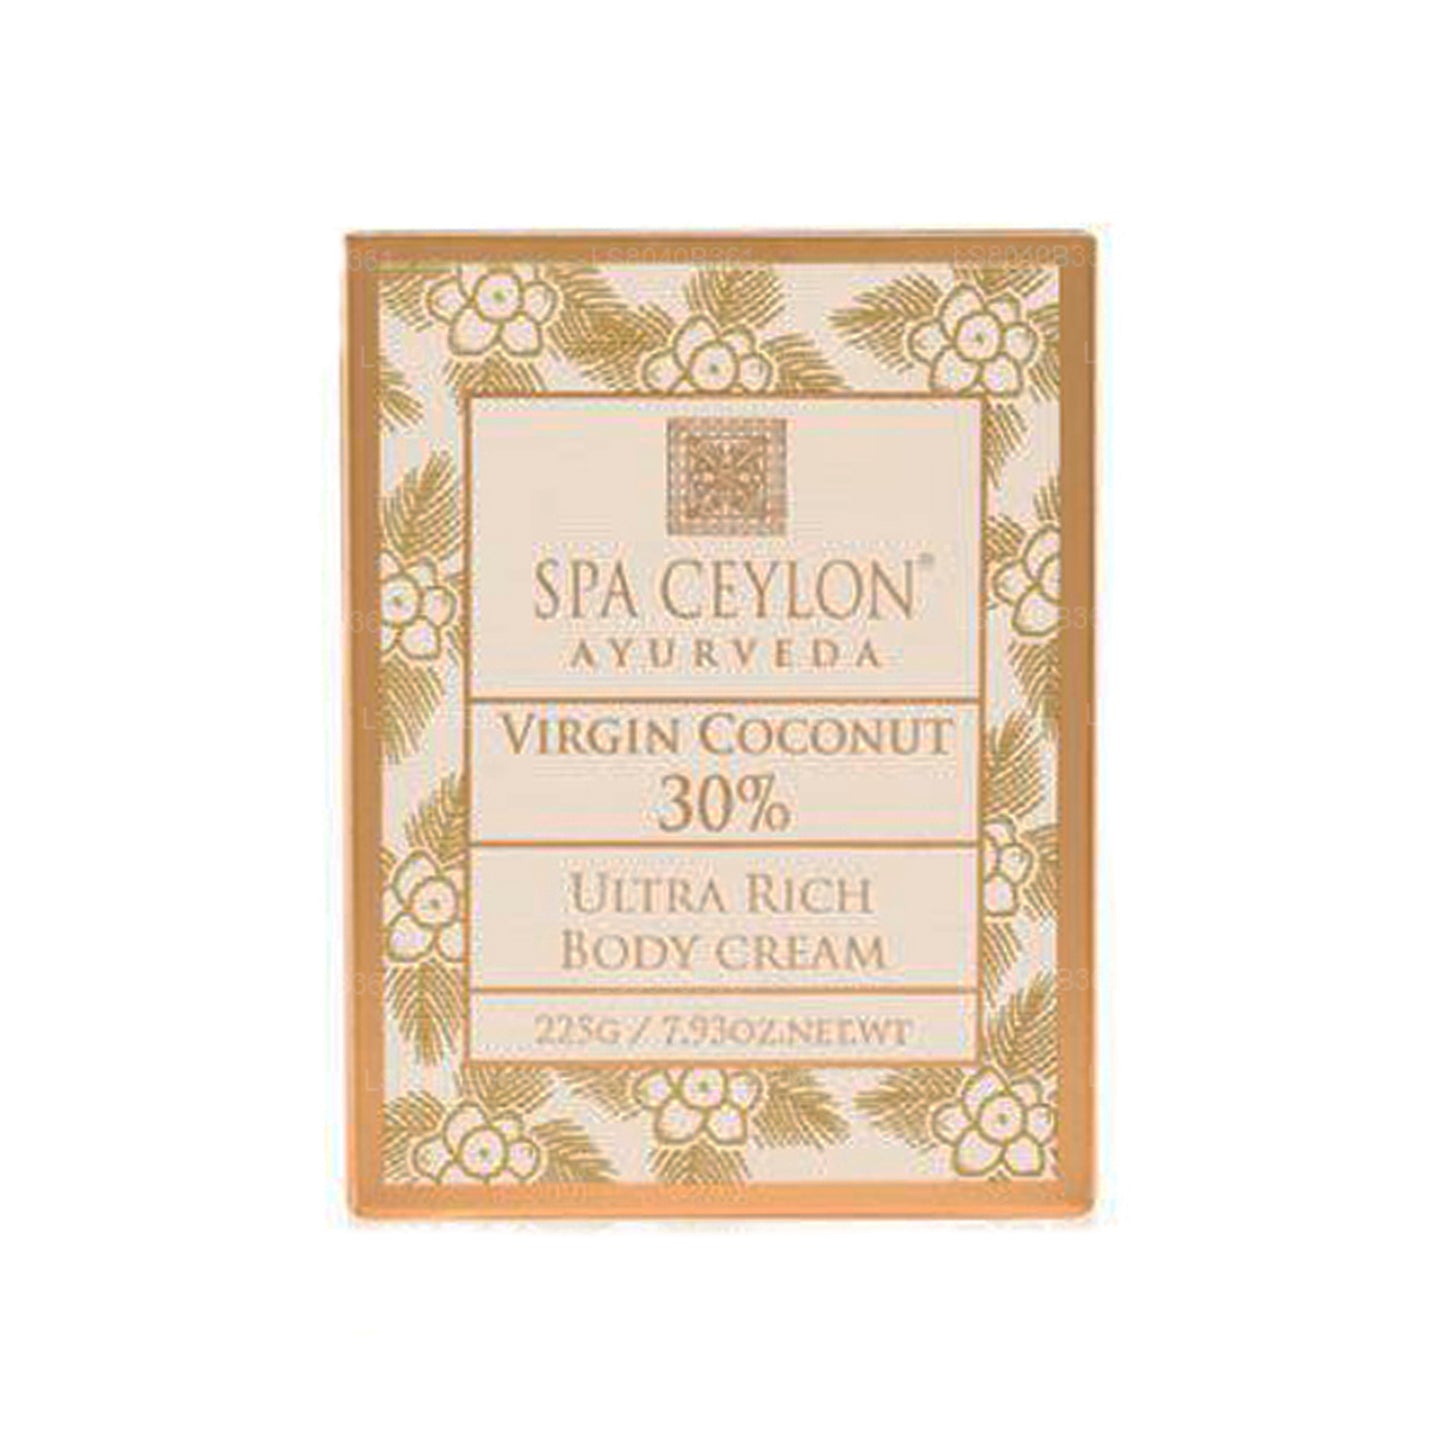 Spa Ceylon Virgin Coconut 30% - Crema corporal ultra rica (200 g)